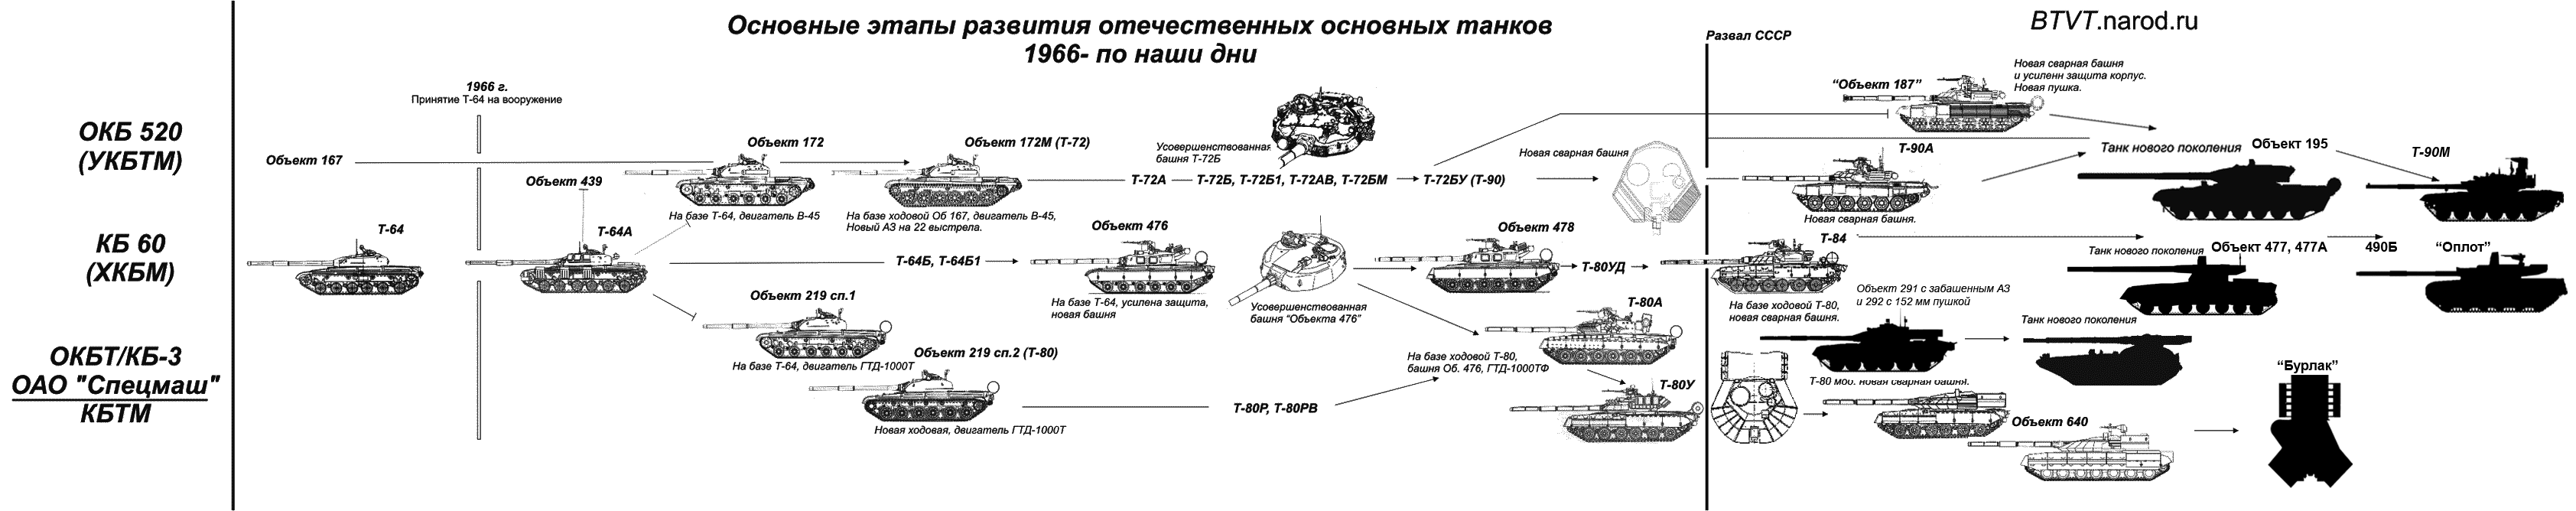 Т-72 урал - советский средний танк, история разработки и применение, конструкция и вооружение, технические характеристики, достоинства и недостатки, модификации